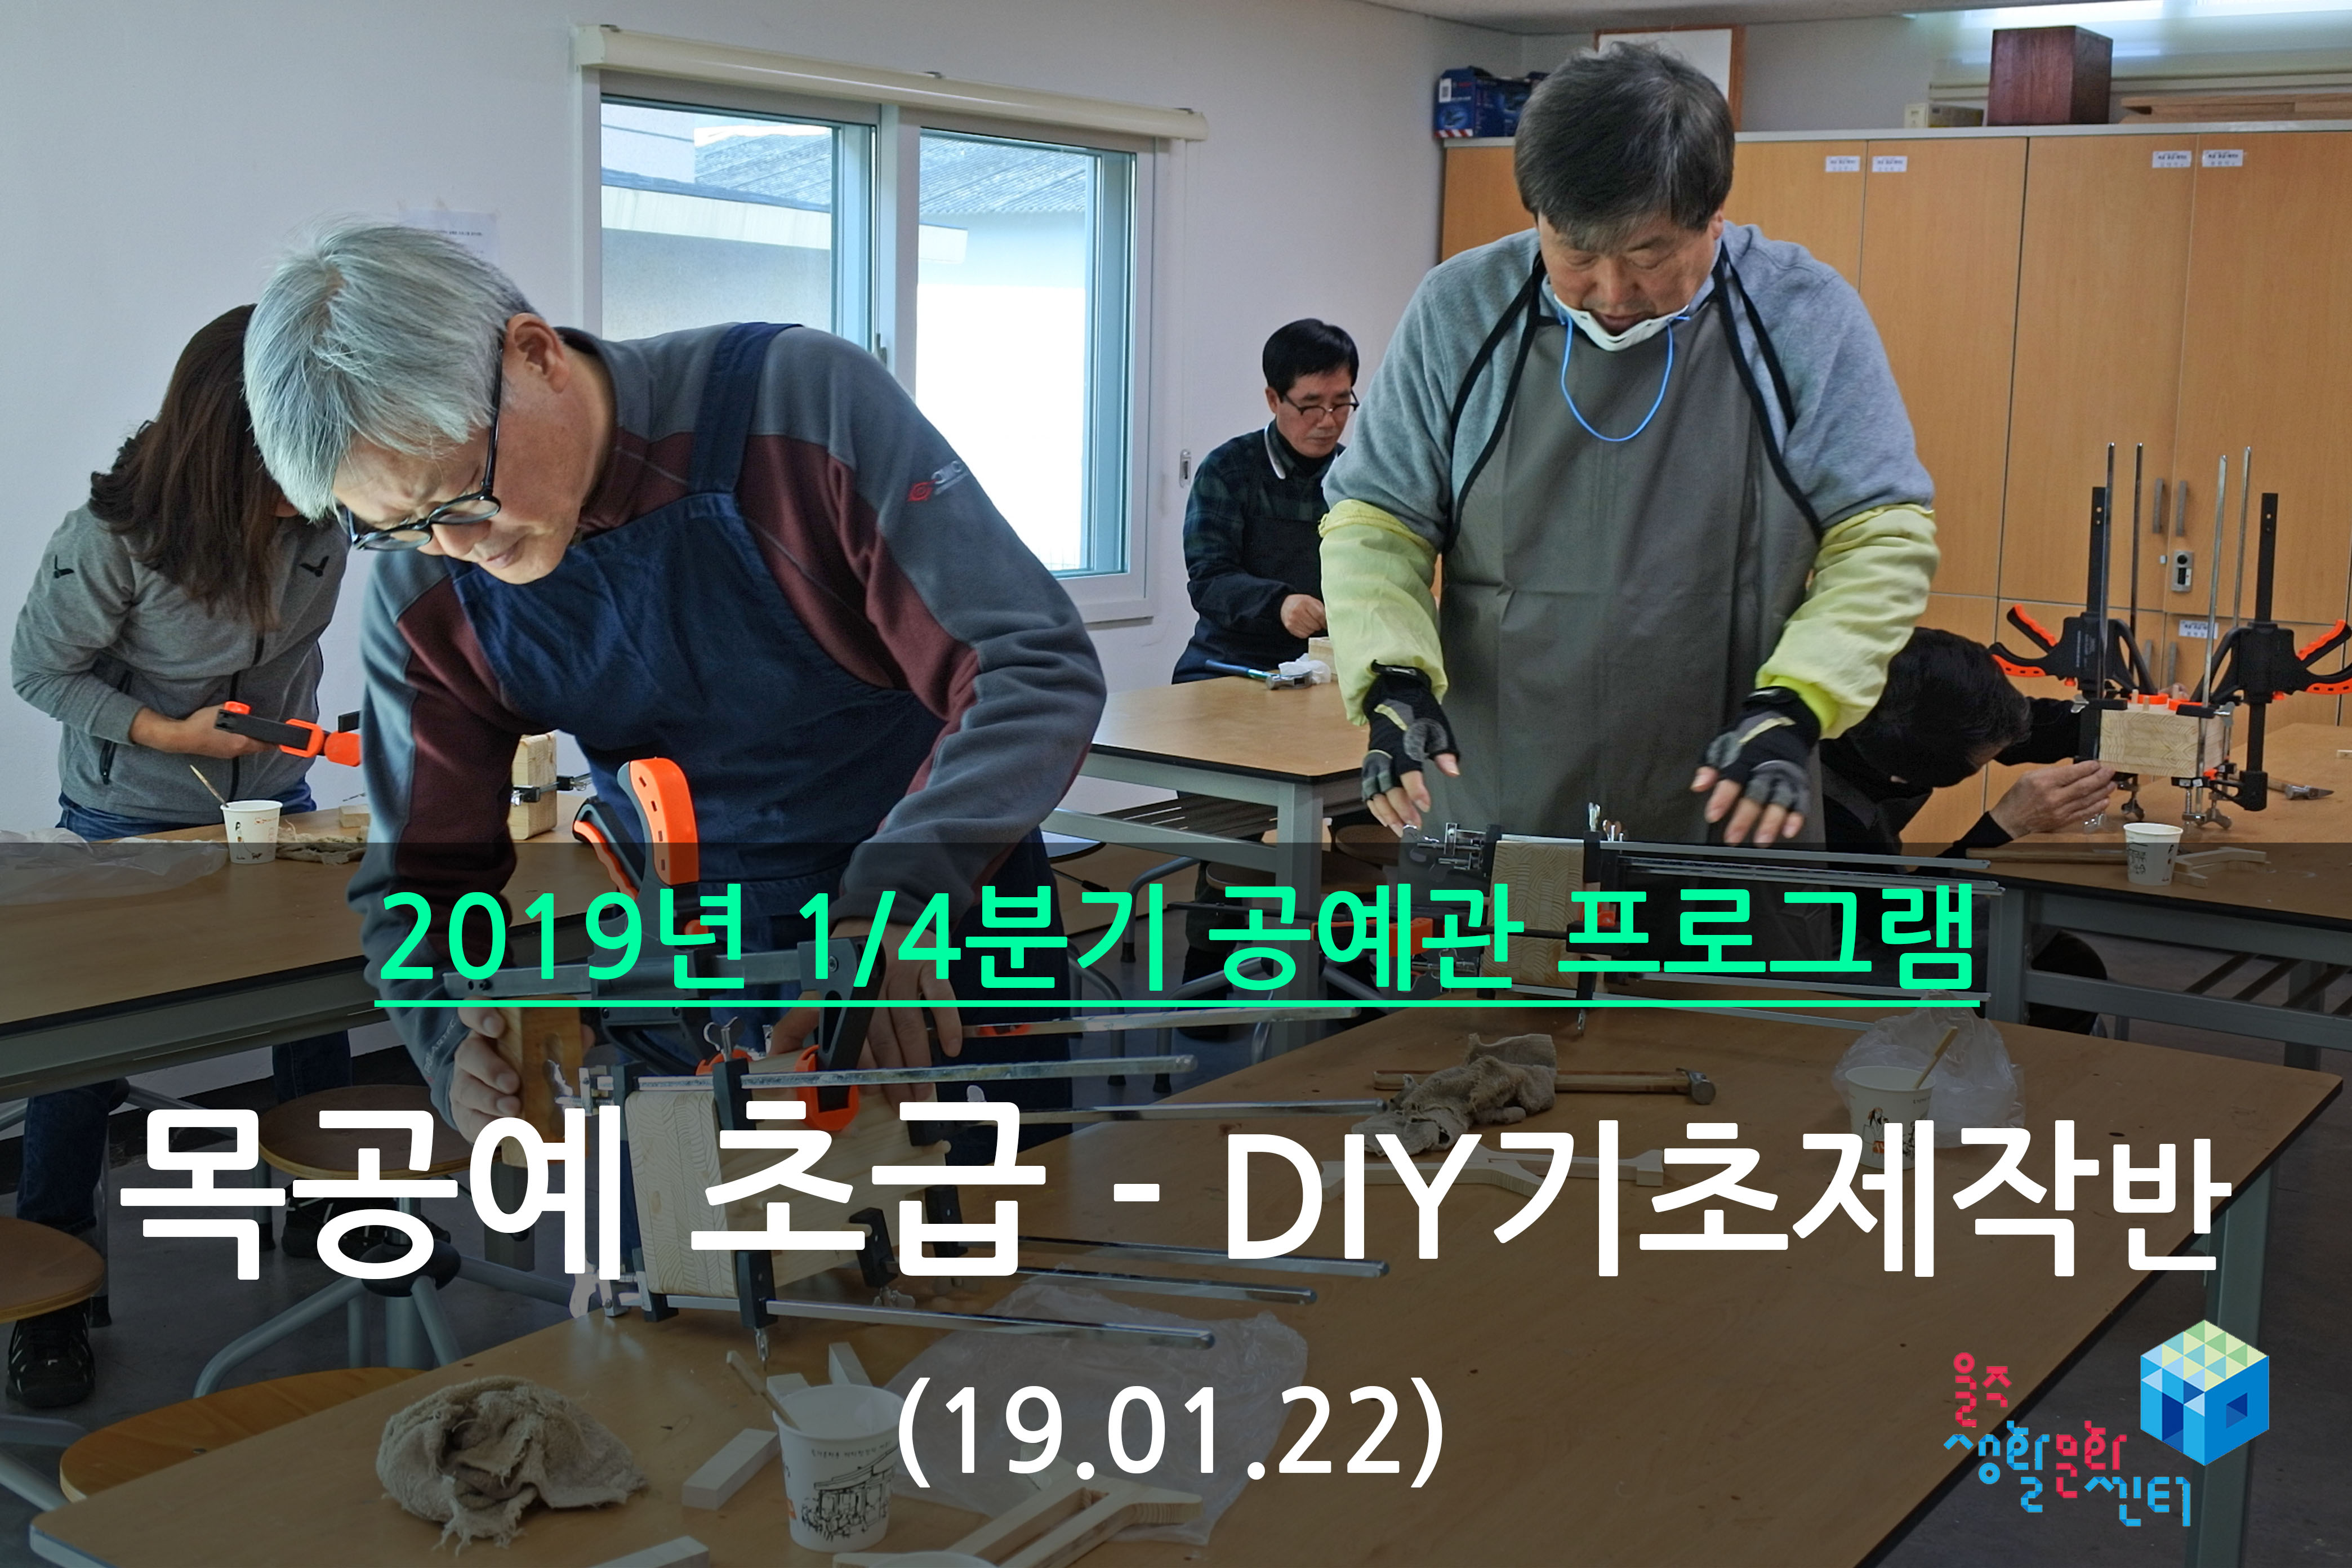 목공예 초급-DIY 기초제작반 _ 2019년 1/4분기 3주차 수업 (2019.01.22)